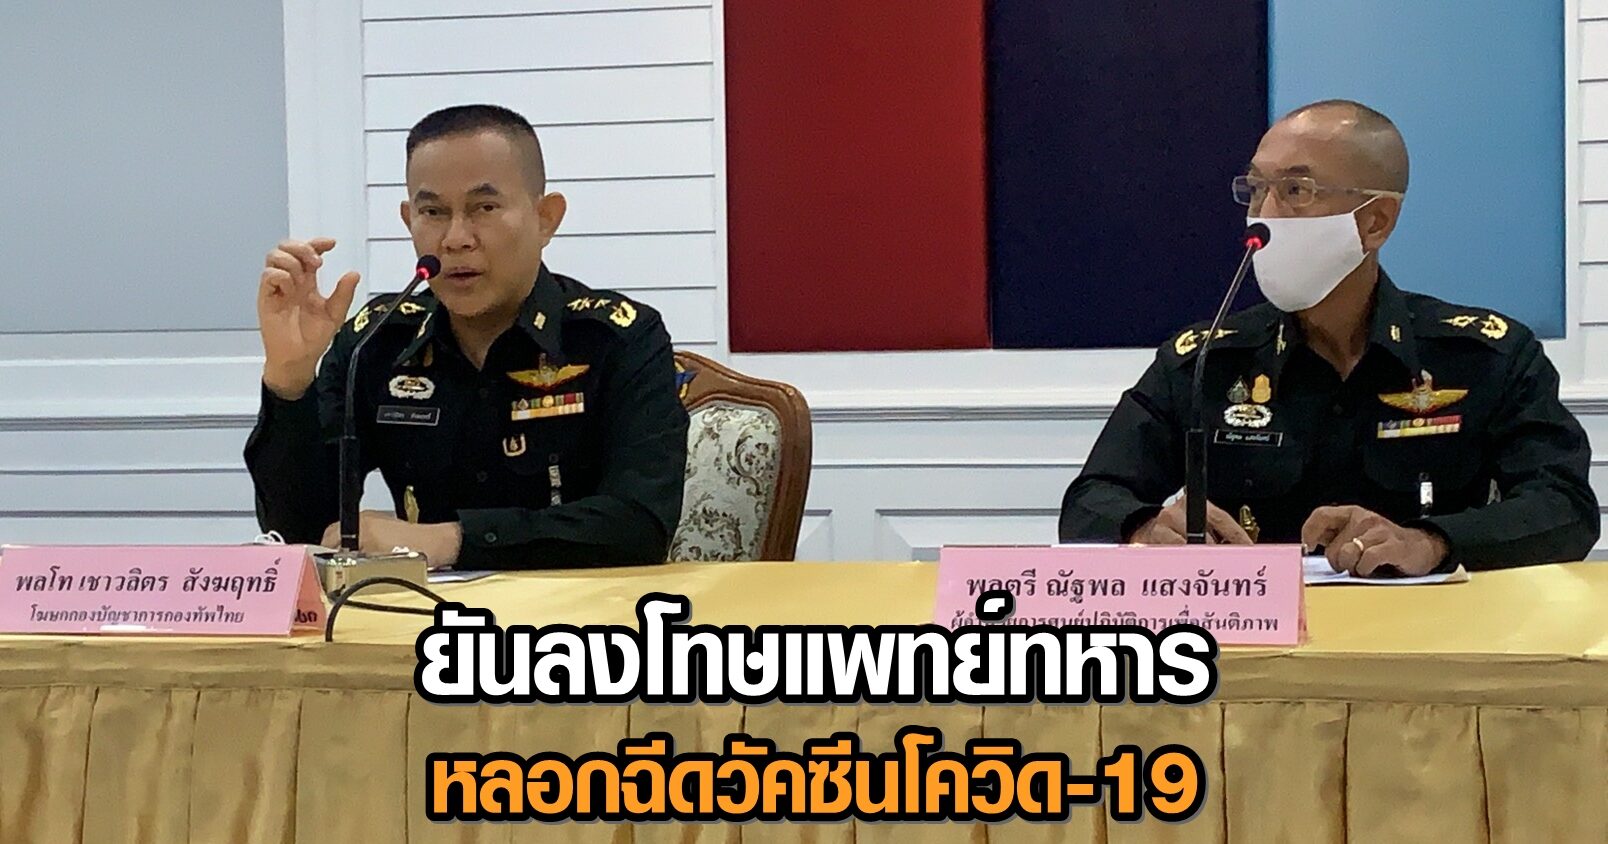 ทัพไทย ยันลงโทษหมอทหาร หลอกฉีดวัคซีนโควิดกำลังพลในเซาท์ซูดาน ชี้เป็นเรื่องส่วนตัว ไม่เกี่ยวกองทัพ